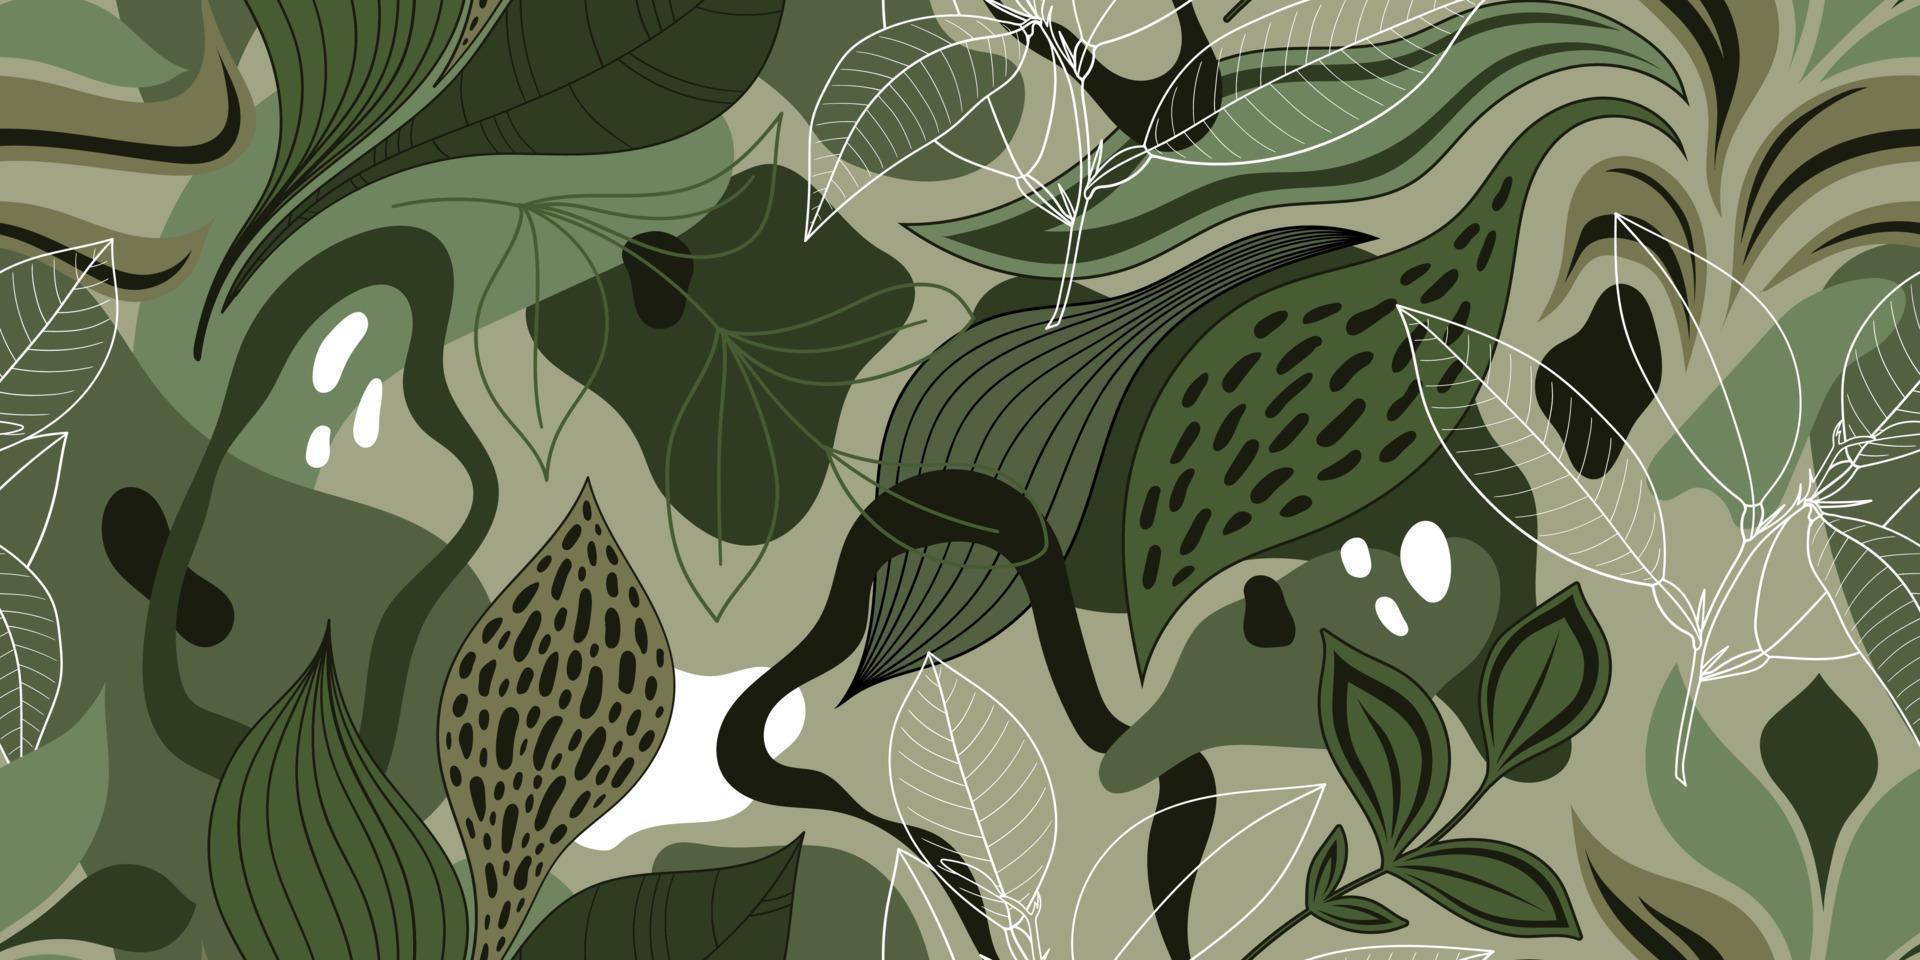 Vektor nahtloser grüner Hintergrund mit bunten abstrakten Flecken und Zweigen